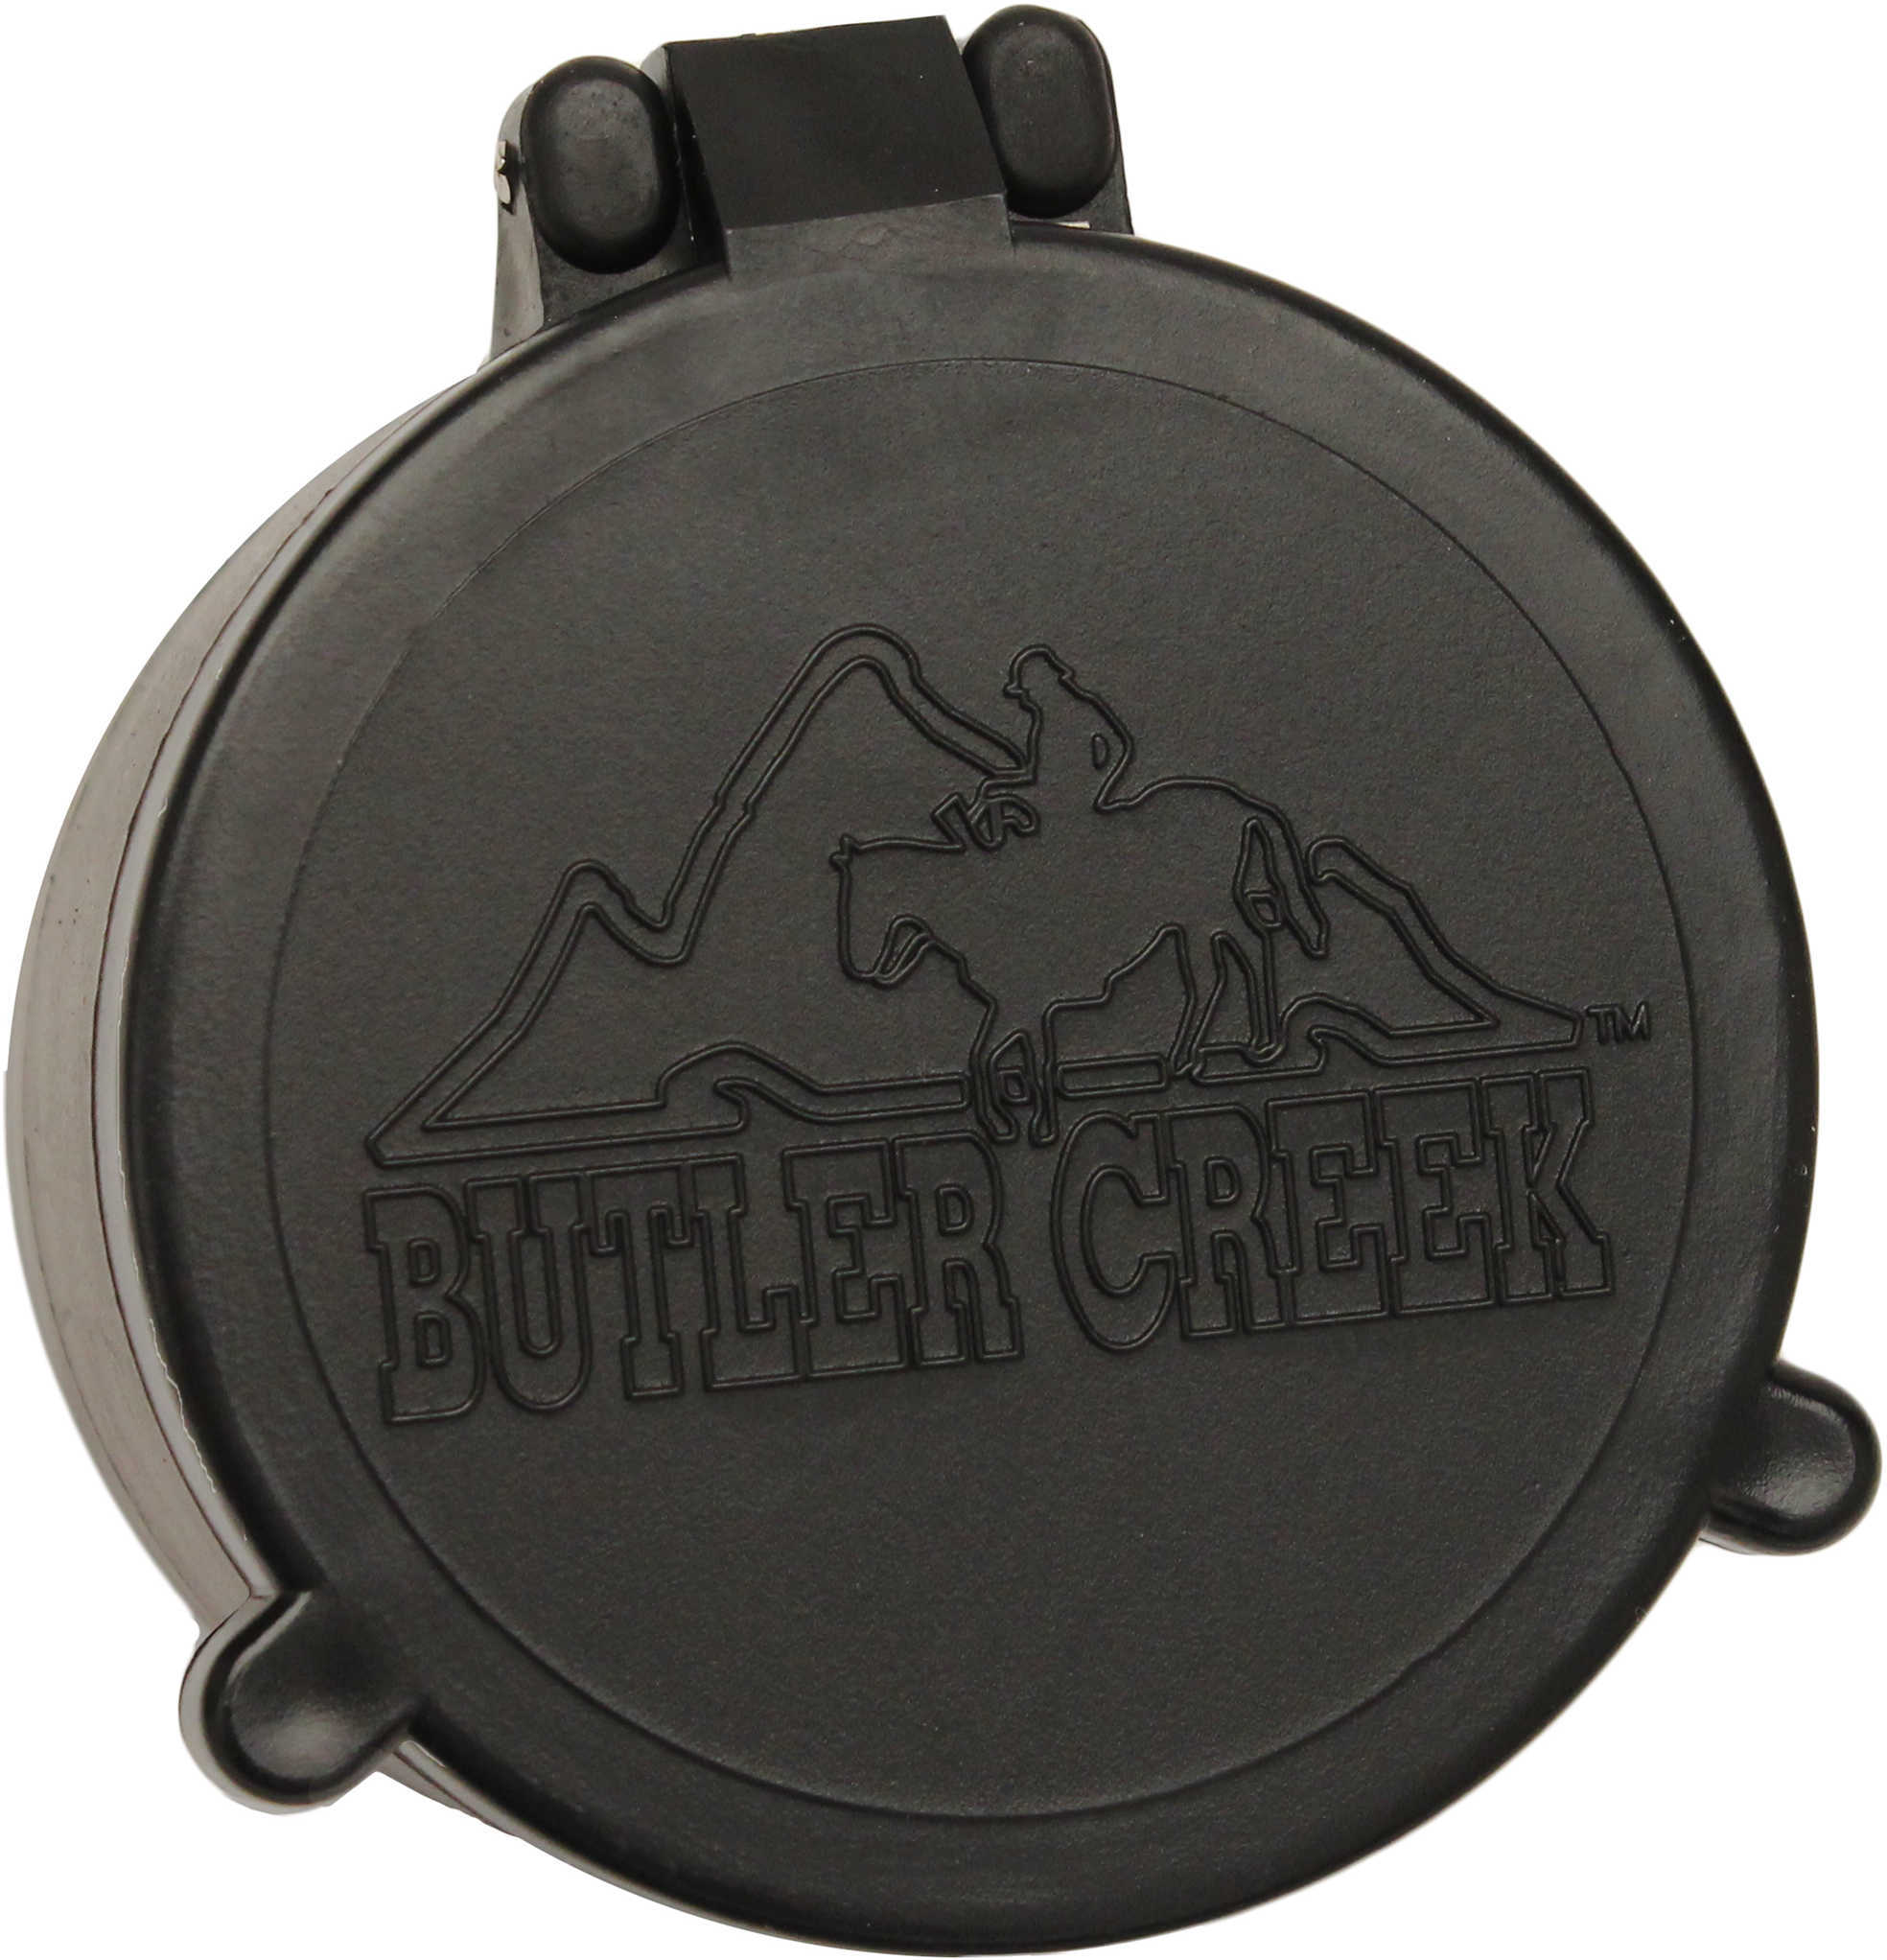 Butler Creek 30290 Flip-Open Scope Cover Objective Lens 48.70mm Slip On Polymer Black